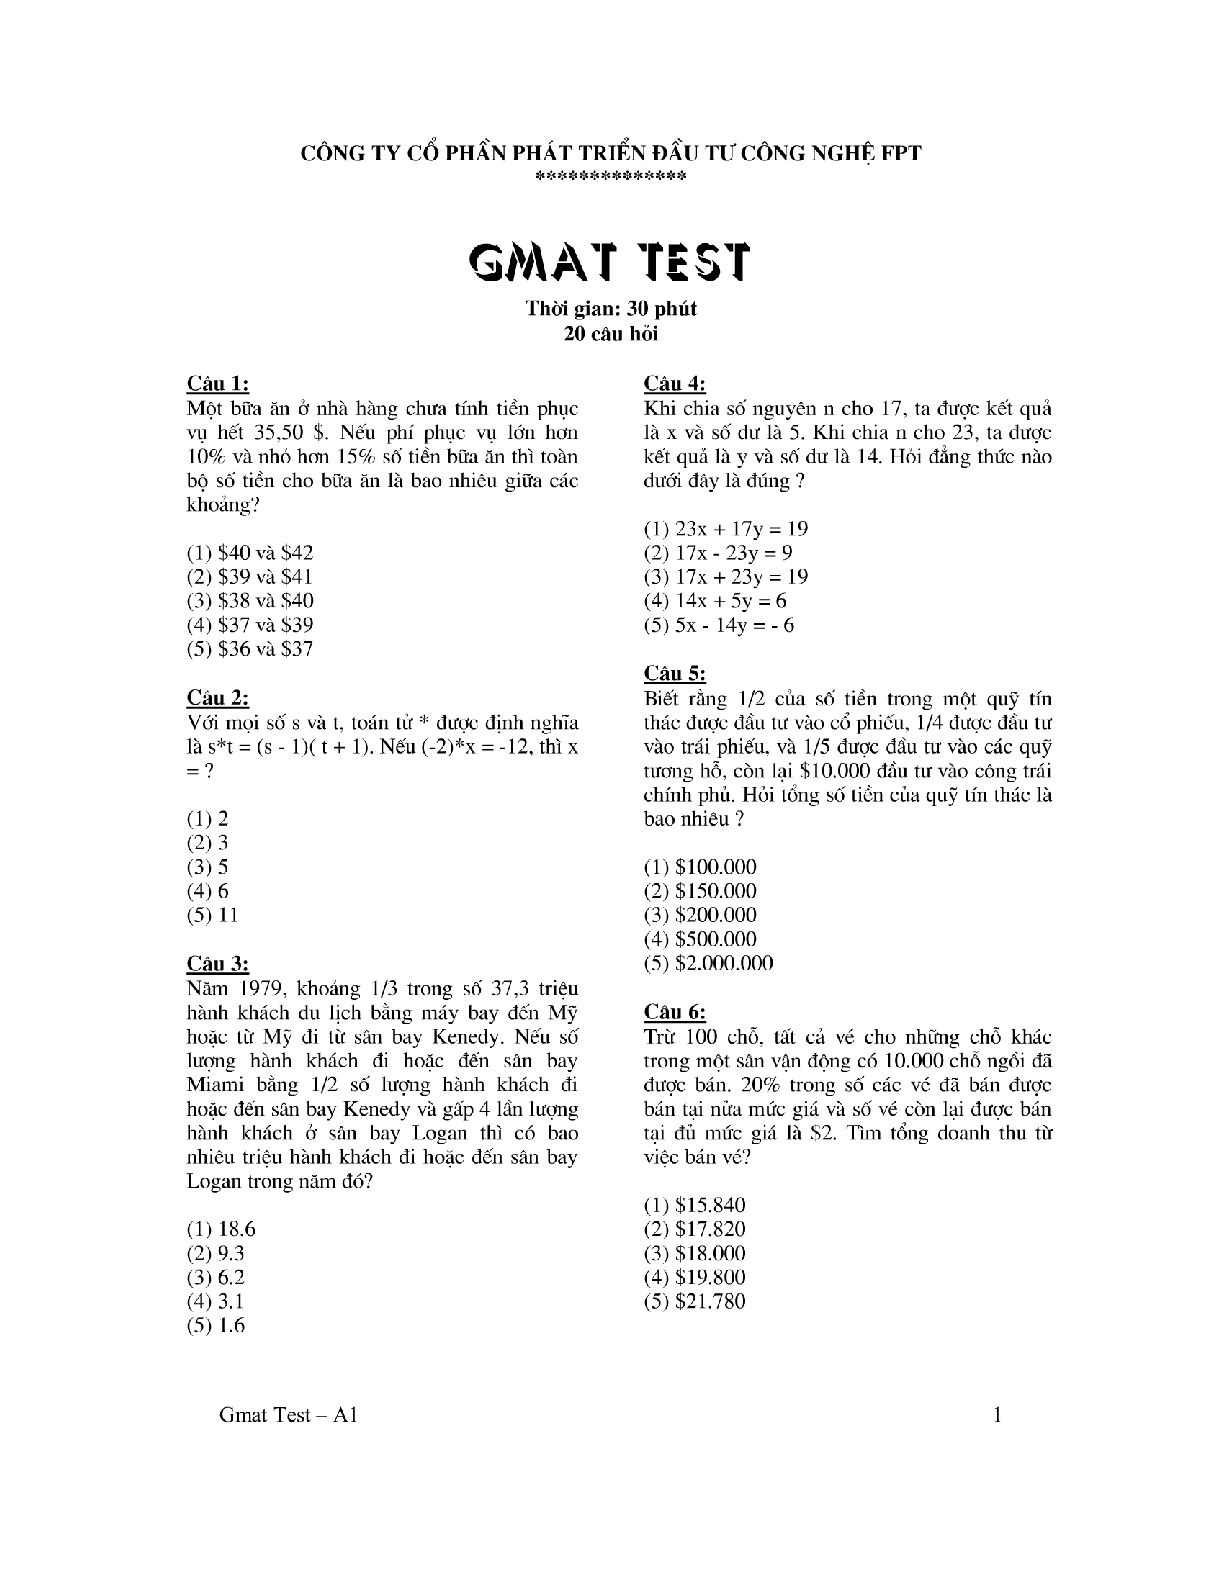 Đề thi GMAT ( có đáp án) | Đại học FPT (trang 1)